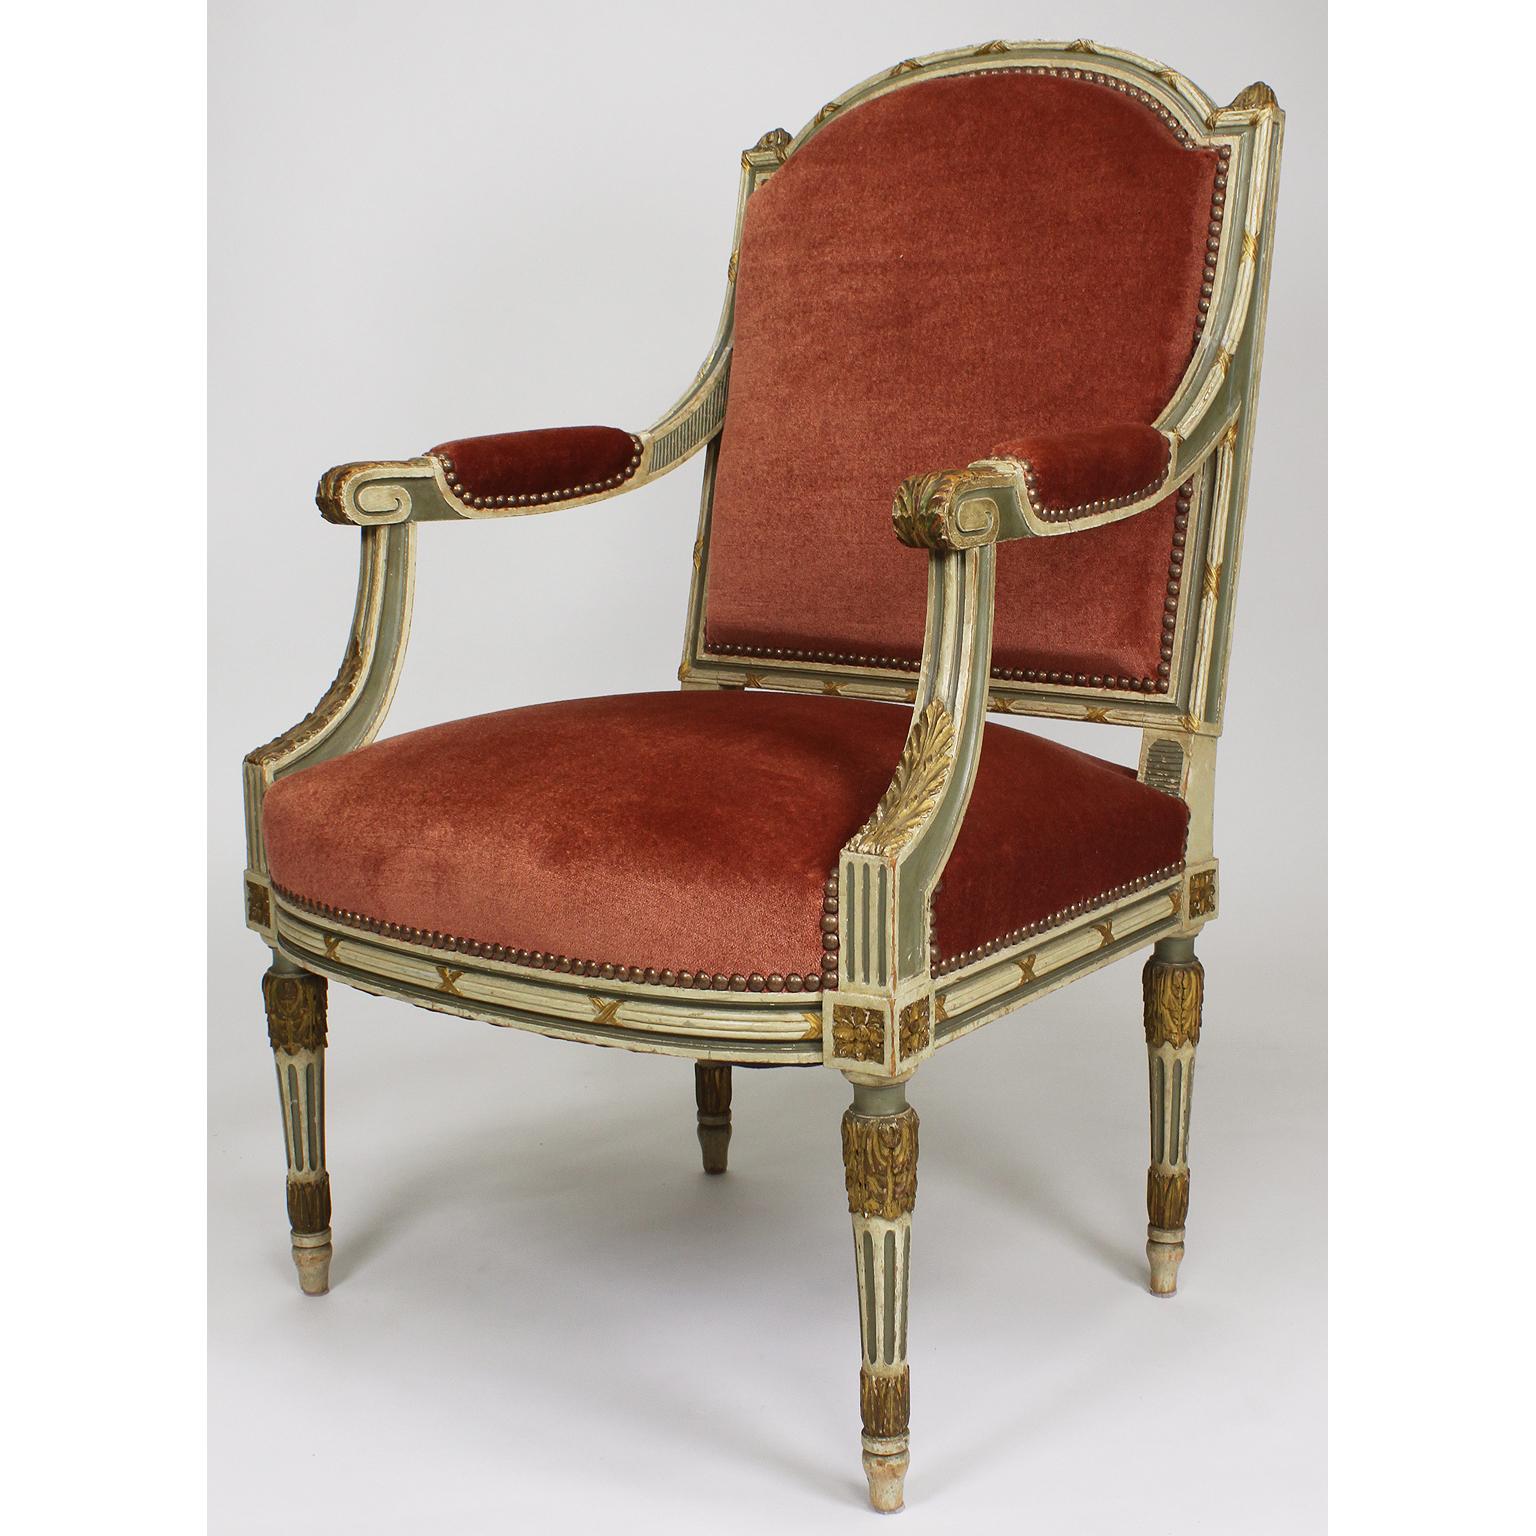 Une belle paire de fauteuils de style Louis XVI français du 19-20e siècle, peints en deux tons crème et vert avec des fauteuils en bois doré. Les cadres en bois finement sculptés avec un dossier rembourré, des accoudoirs ouverts à volutes et